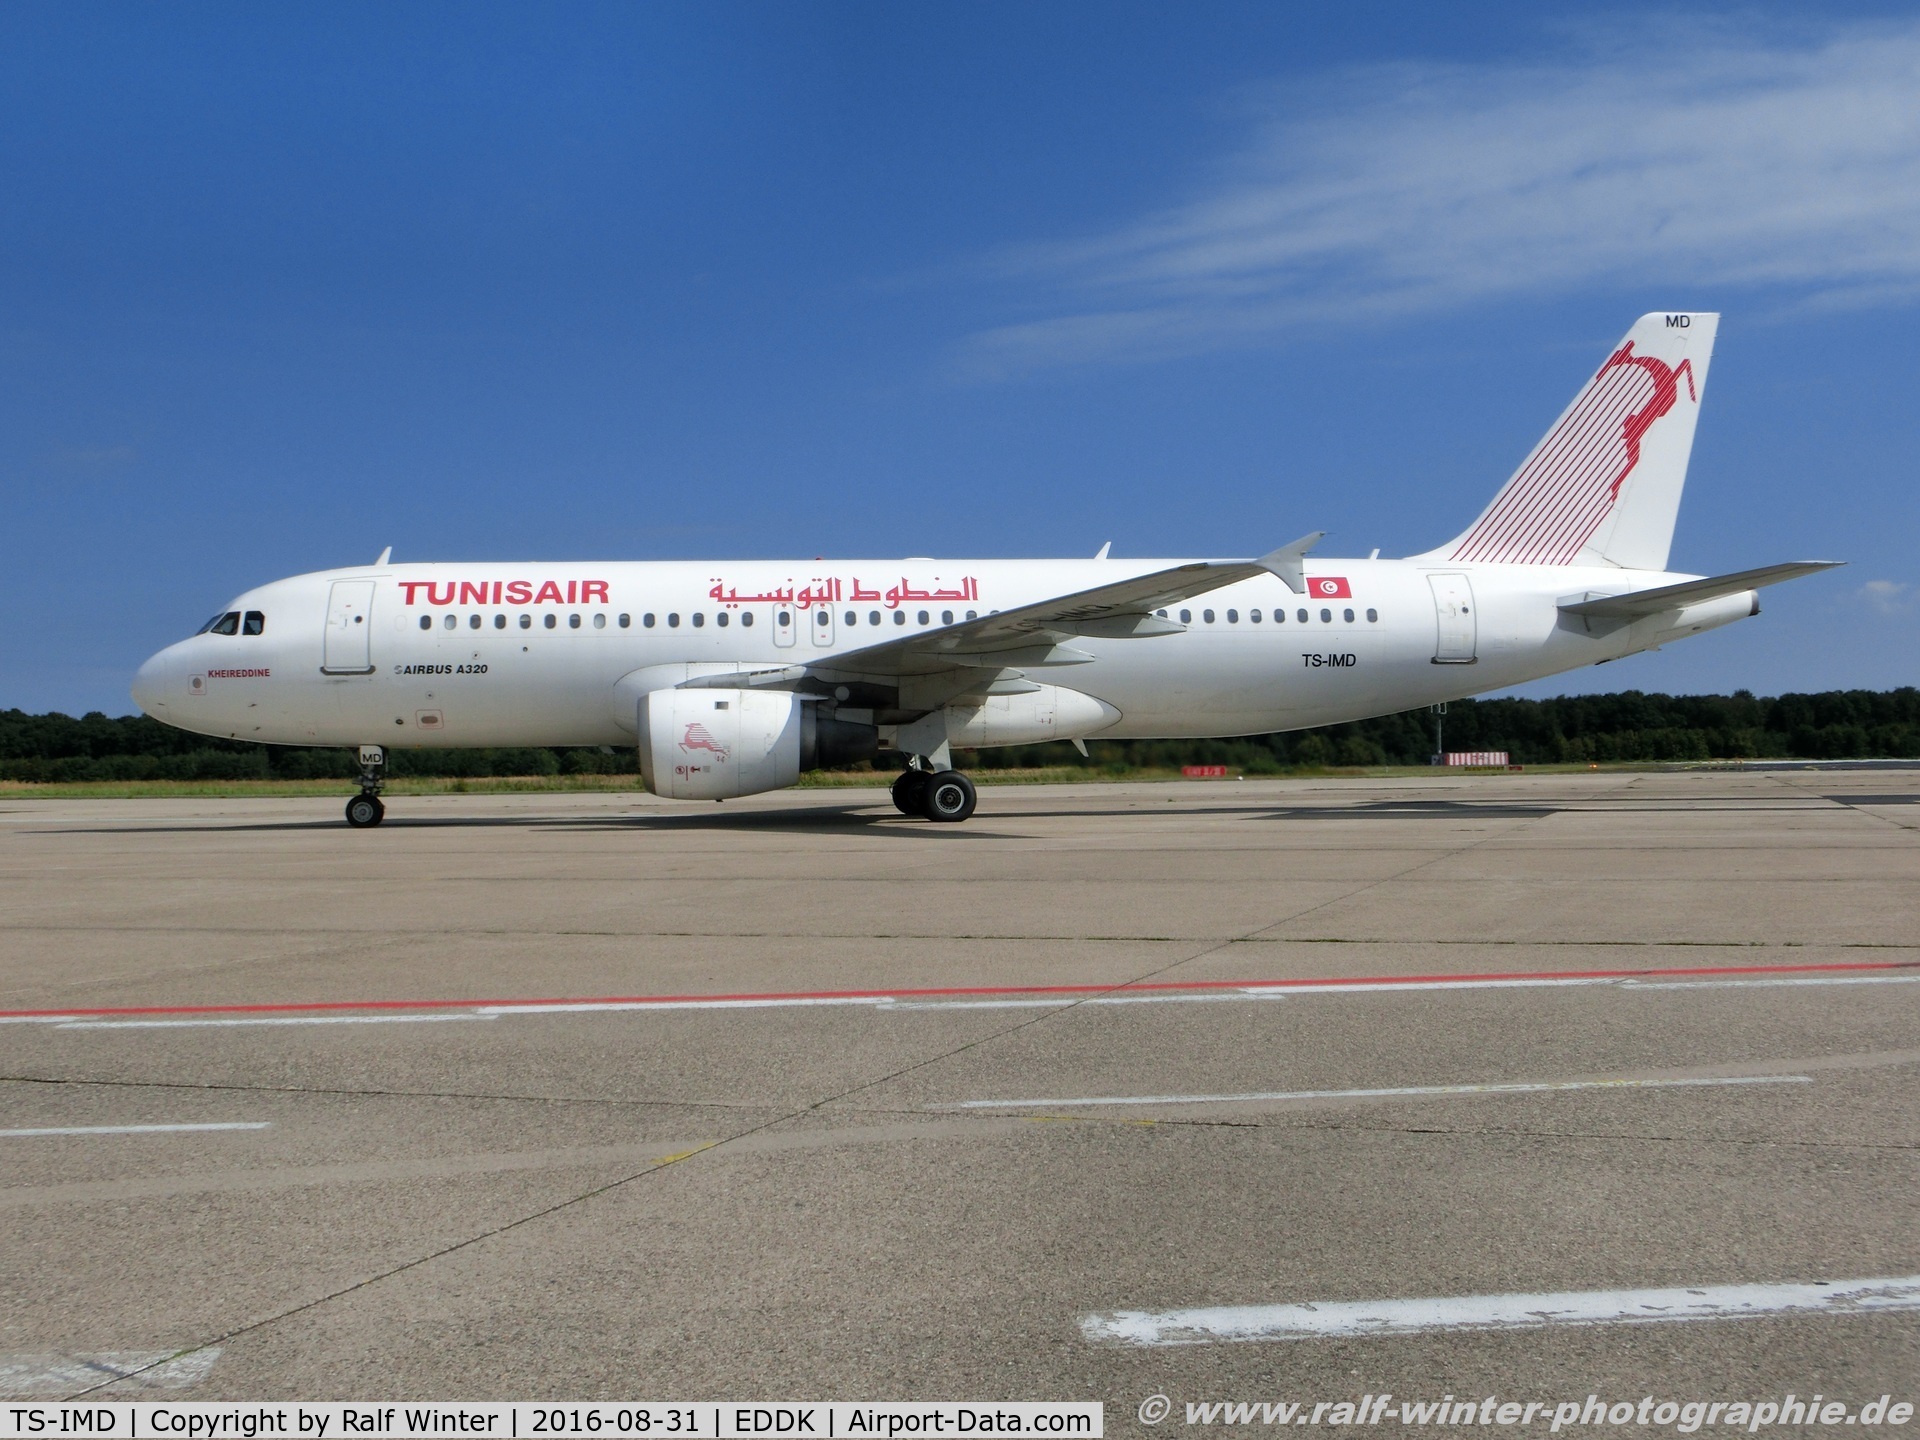 TS-IMD, 1991 Airbus A320-211 C/N 0205, Airbus A320-211 - TU TAR Tunisair 'Kheredine' - 205 - TS-IMD - 31.08.2016 - CGN